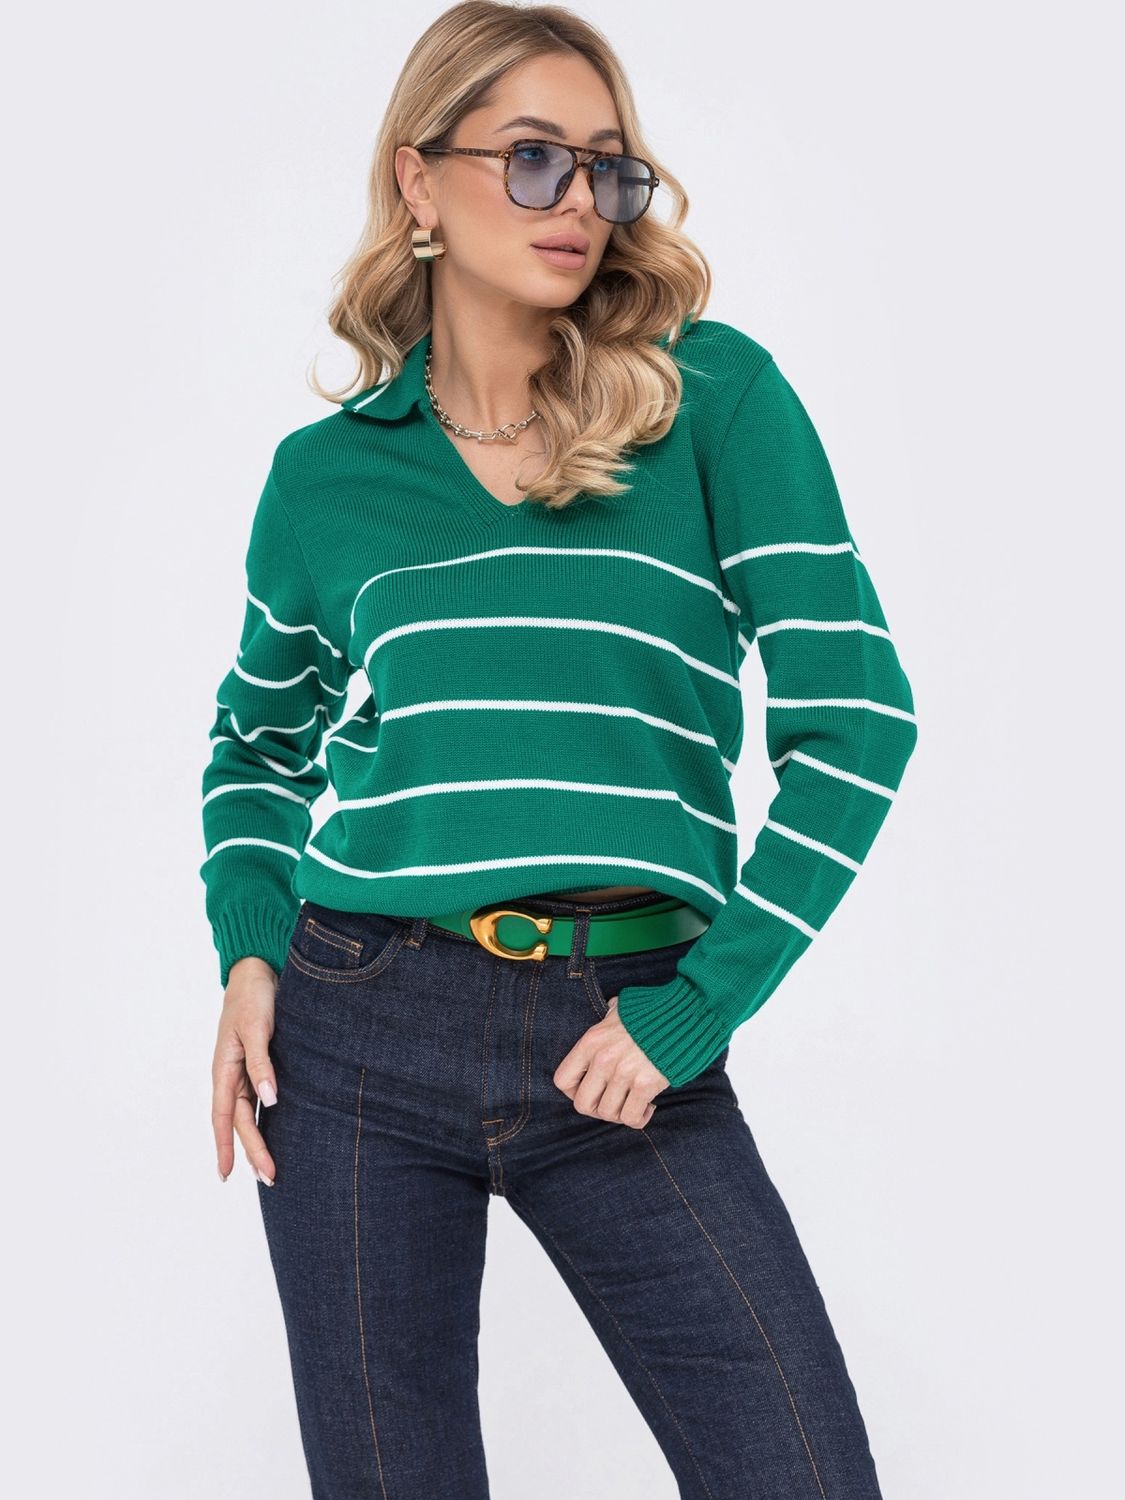 Жіночий пуловер в'язаний зеленого кольору - фото